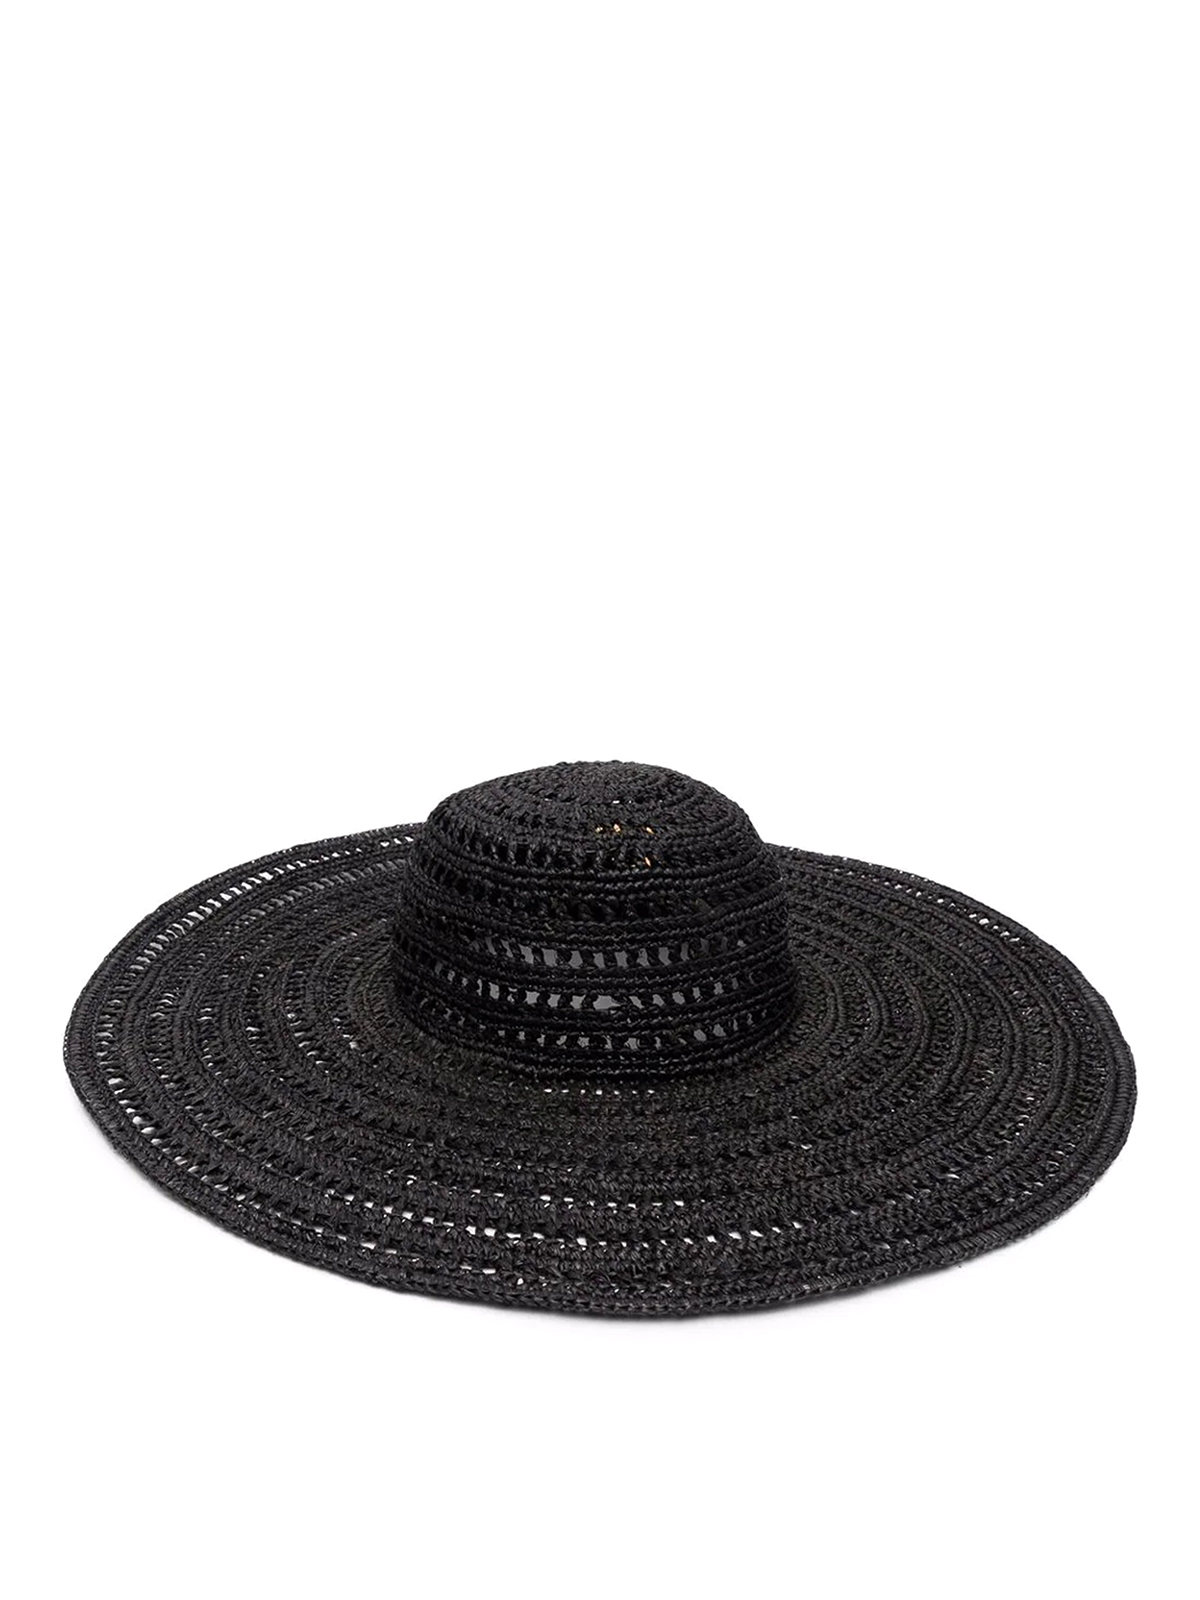 Ibeliv Sombrero - Negro